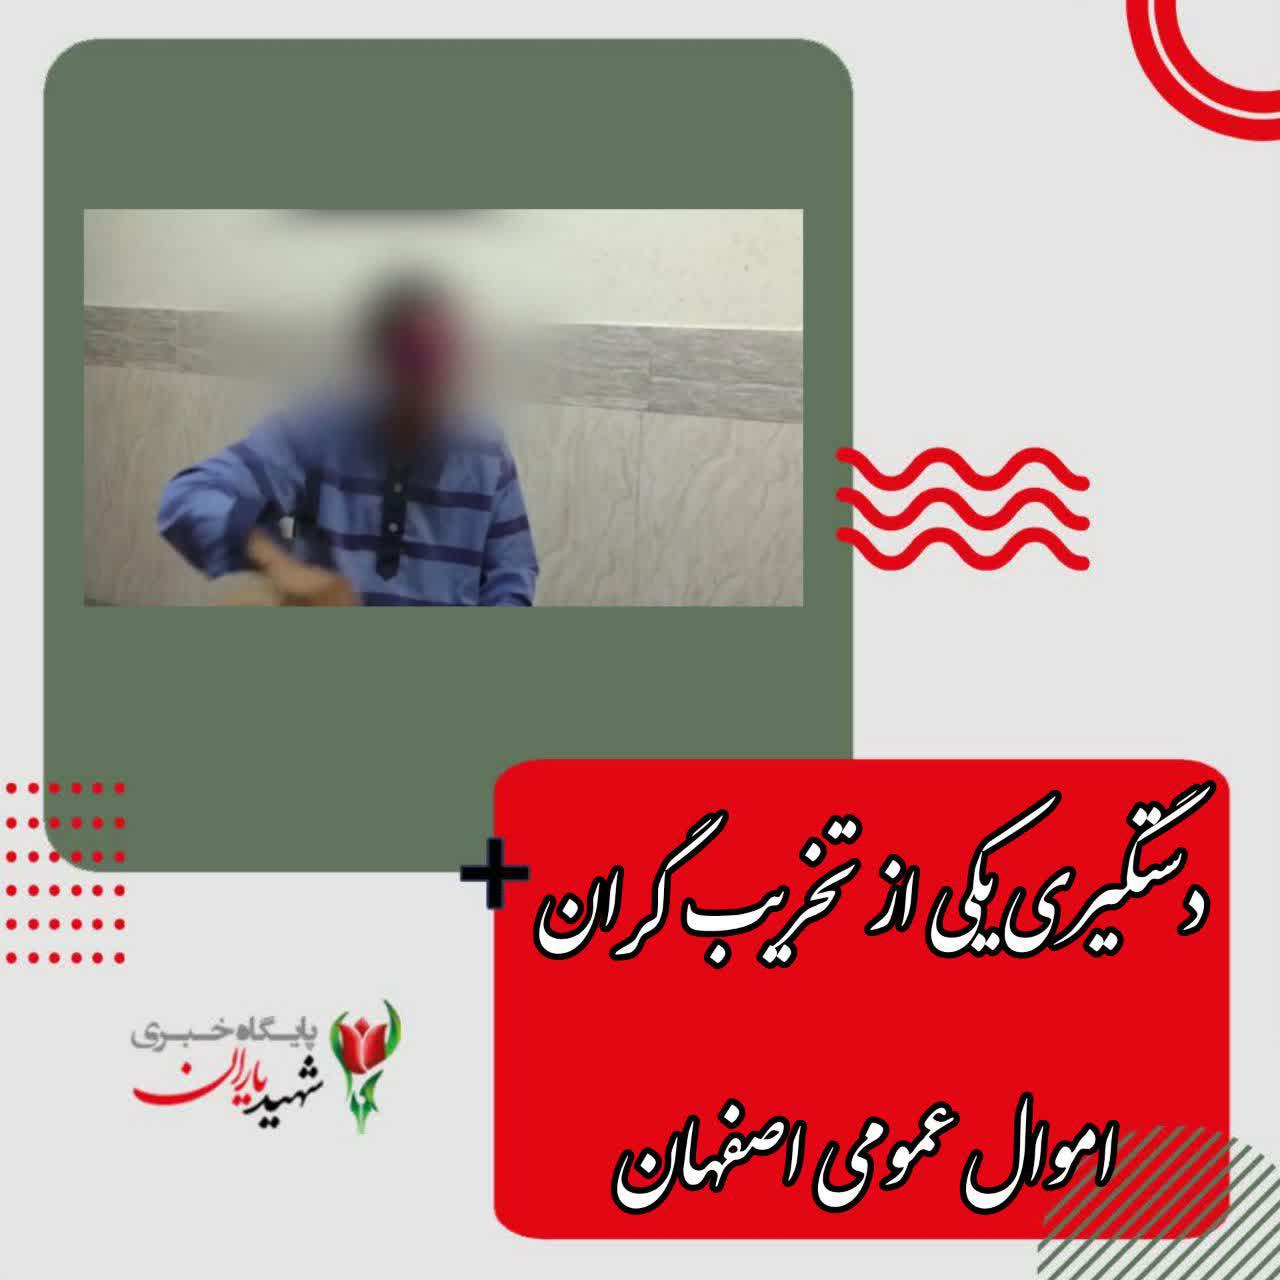 دستگیری یکی از تخریب گران اموال عمومی اصفهان